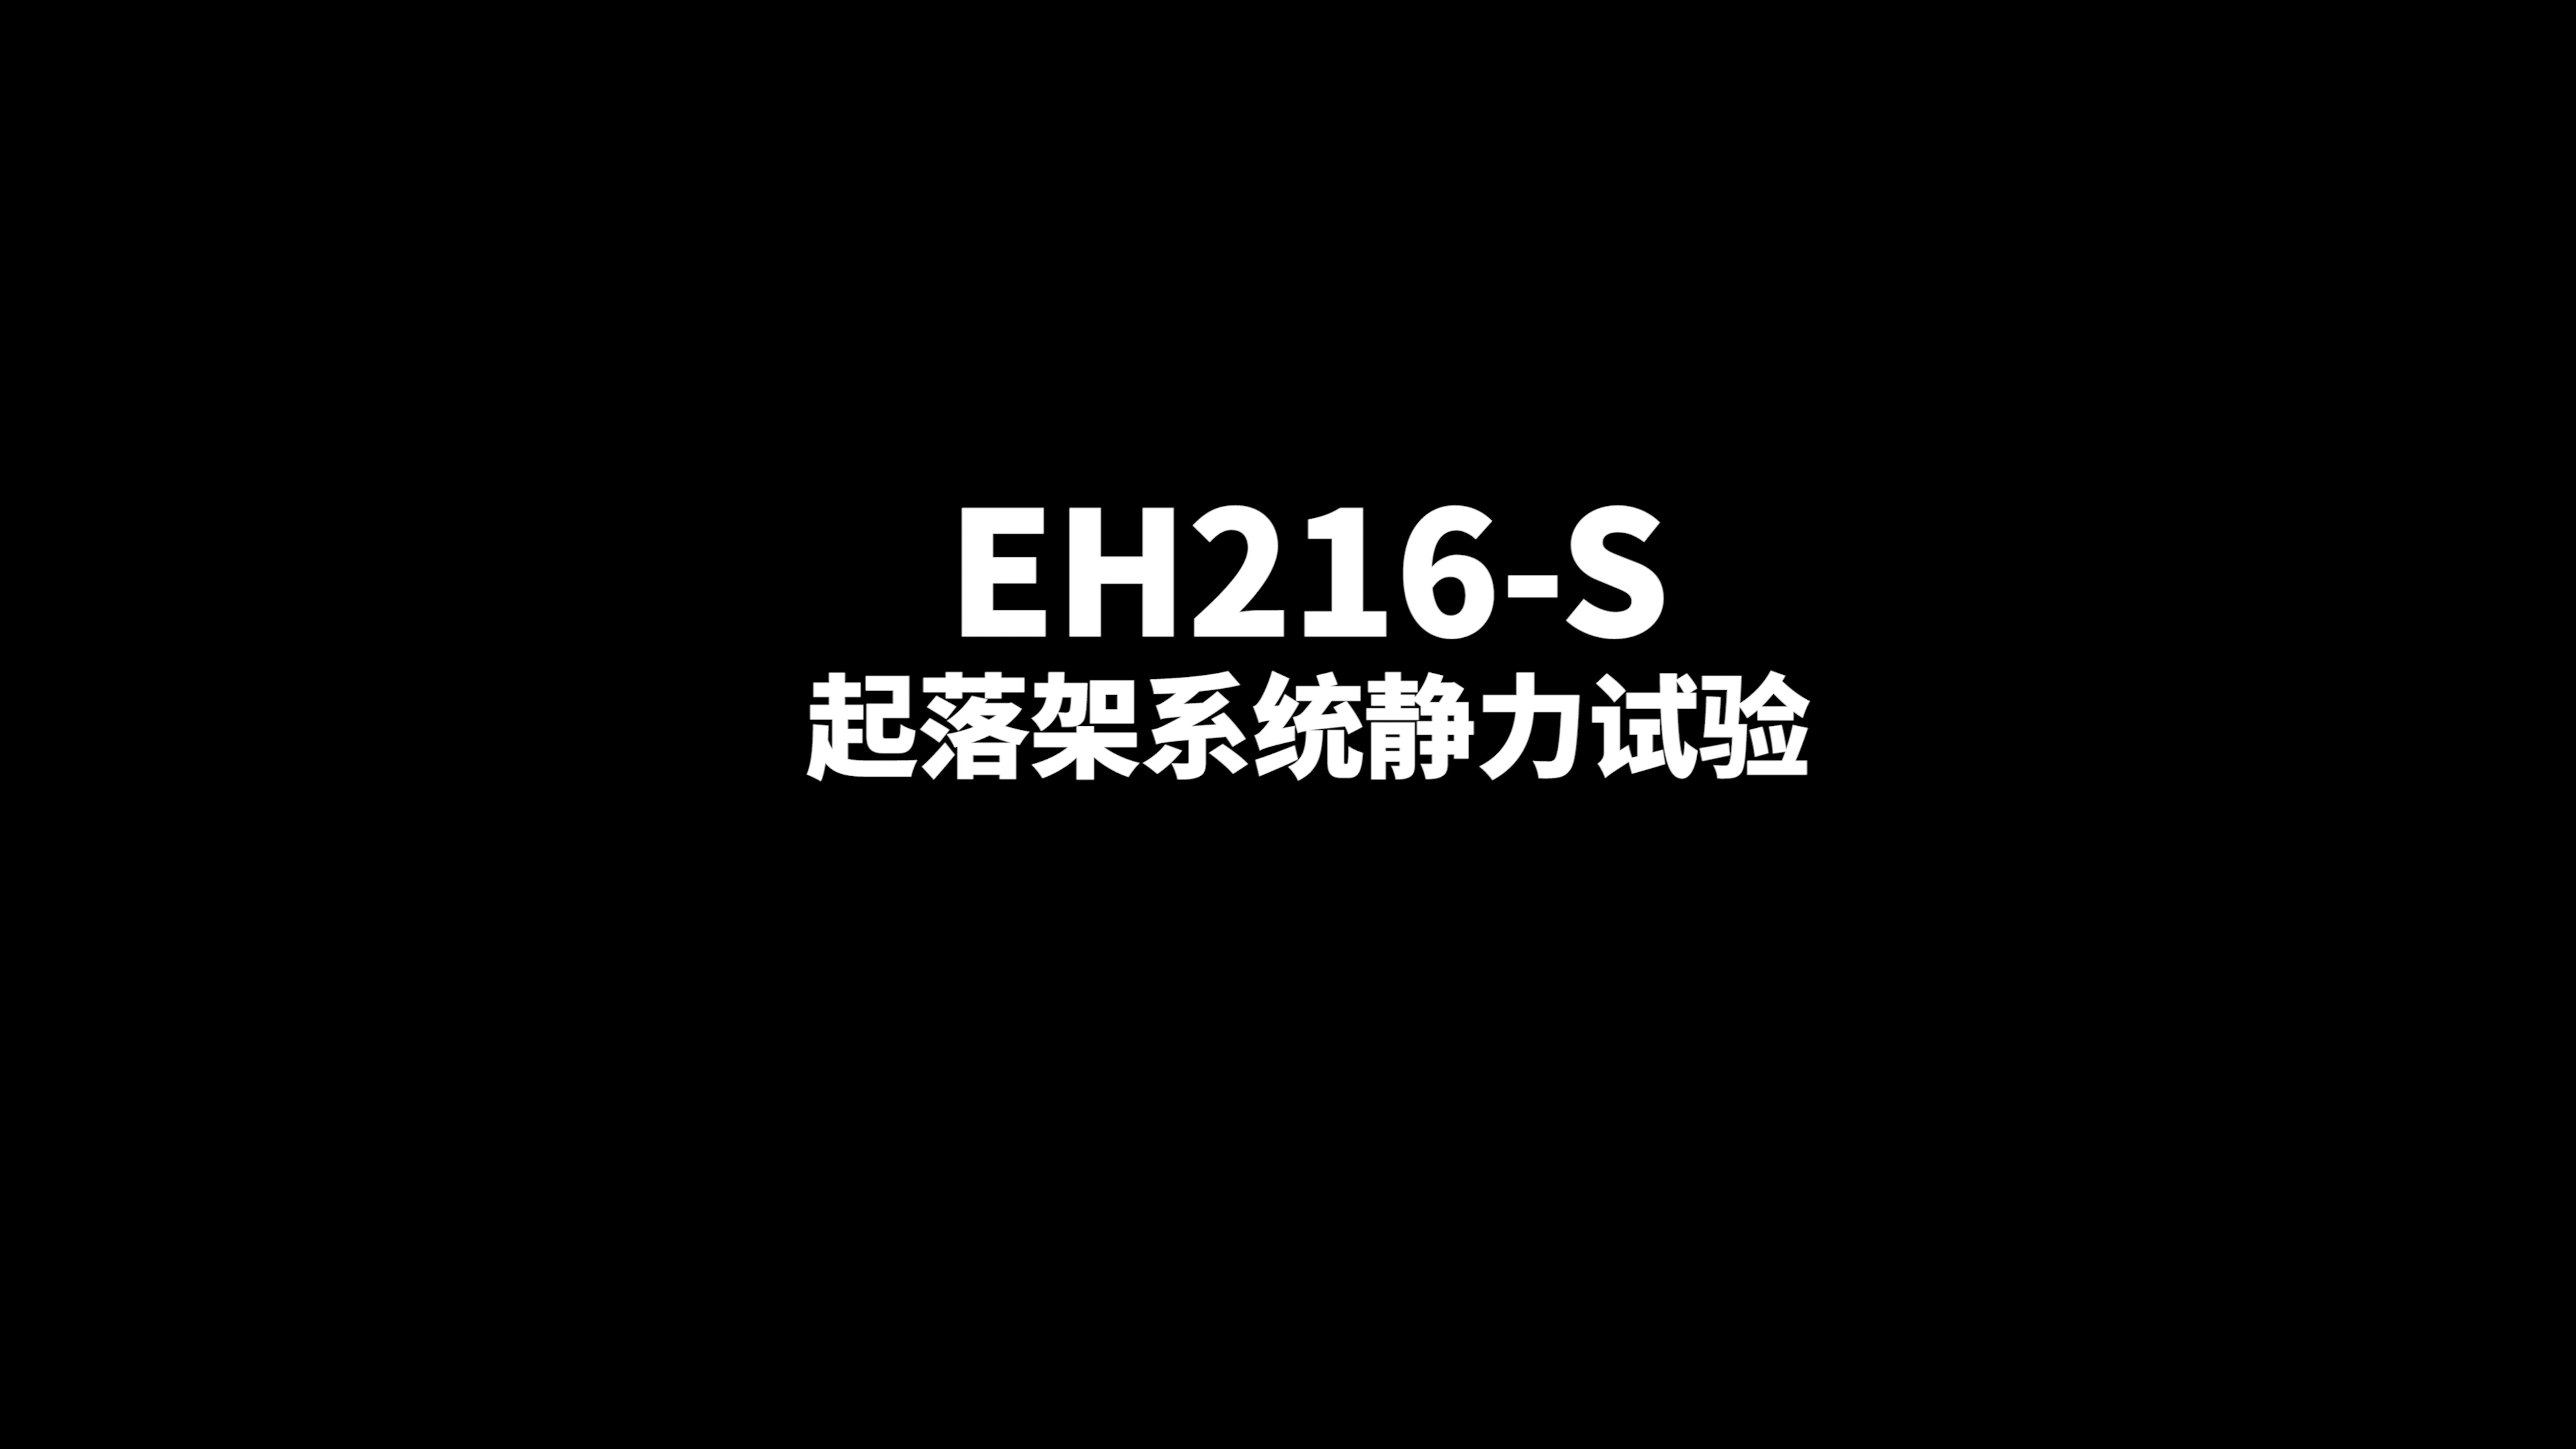 EH216-S型号合格审查试验之起落架系统静力试验